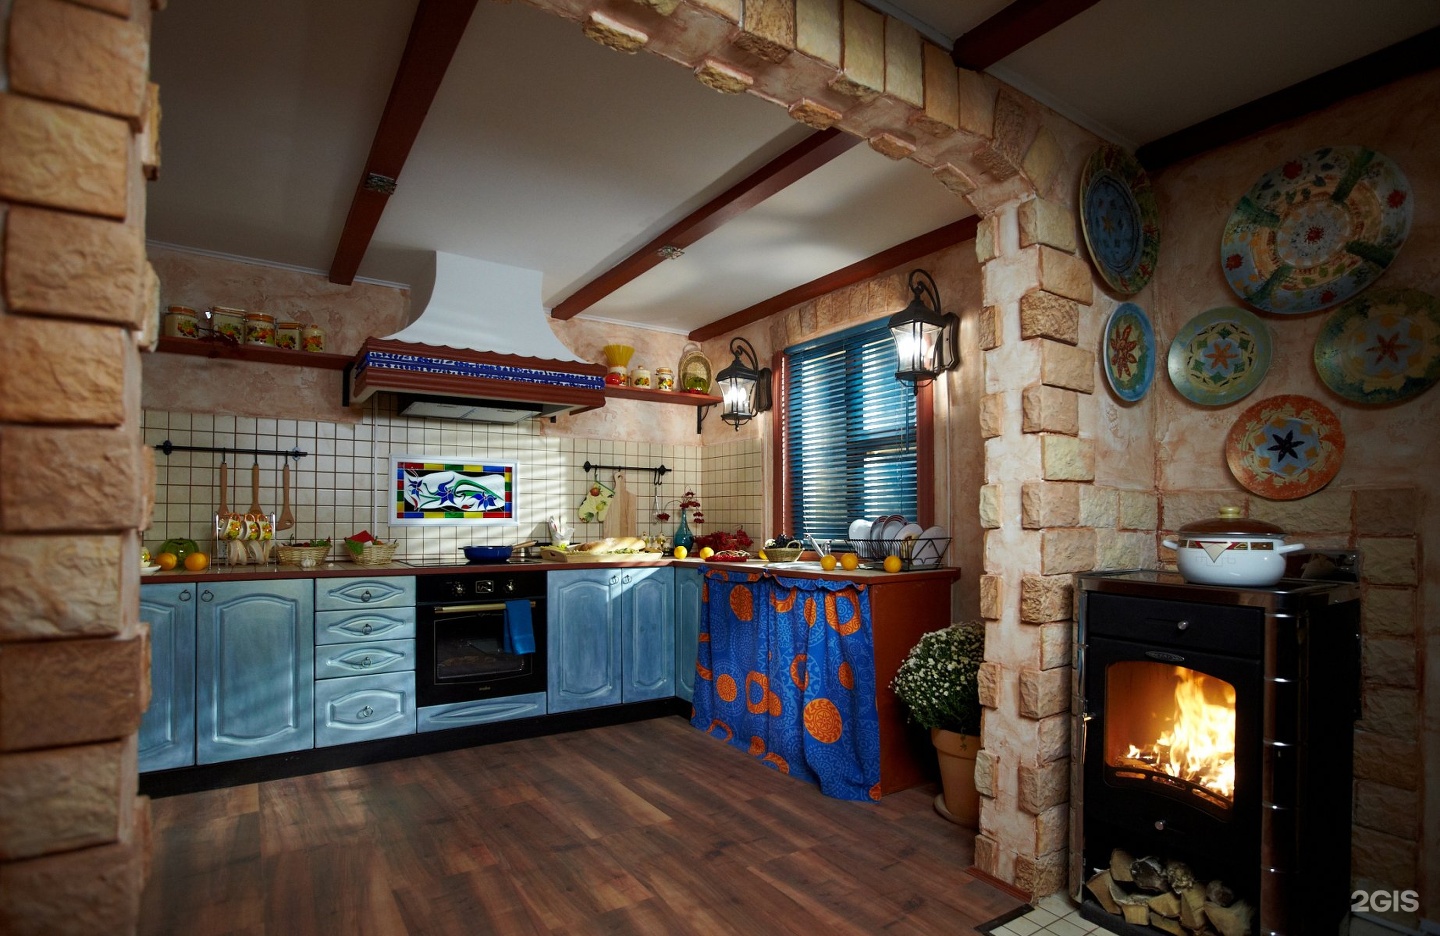 Печеный дом. Кухня в деревянном доме. Кухни в деревенском стиле в доме. Современная кухня в деревенском стиле. Кухня в русском деревенском стиле.